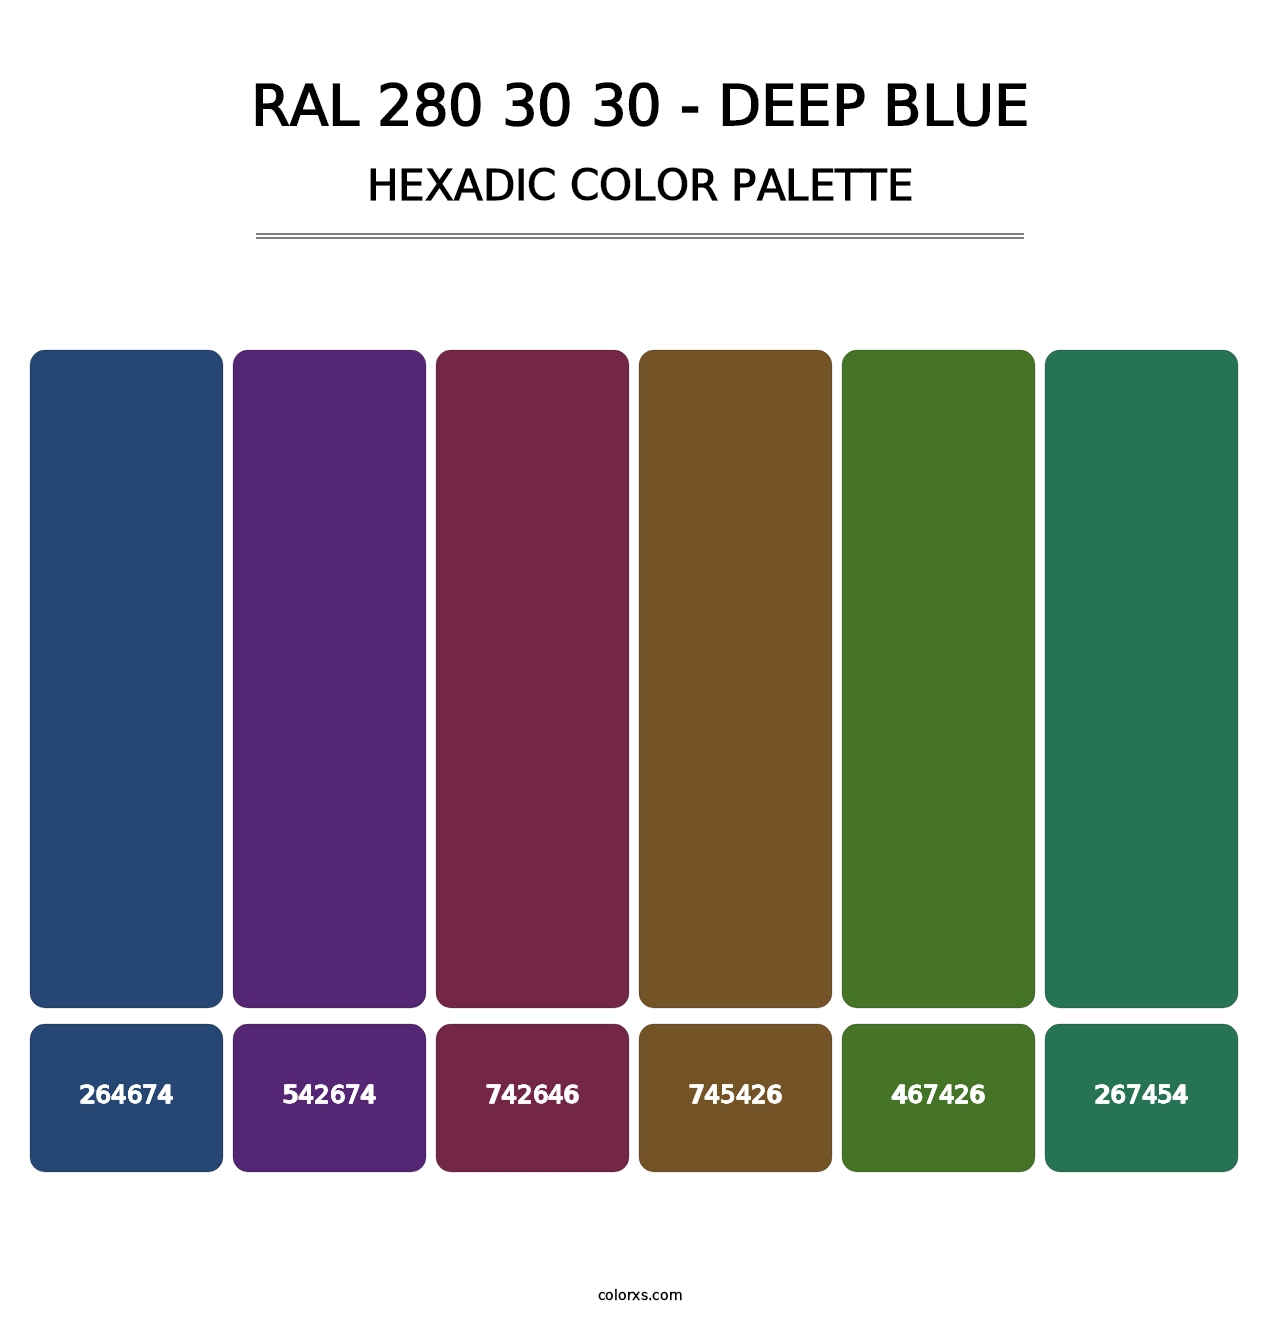 RAL 280 30 30 - Deep Blue - Hexadic Color Palette